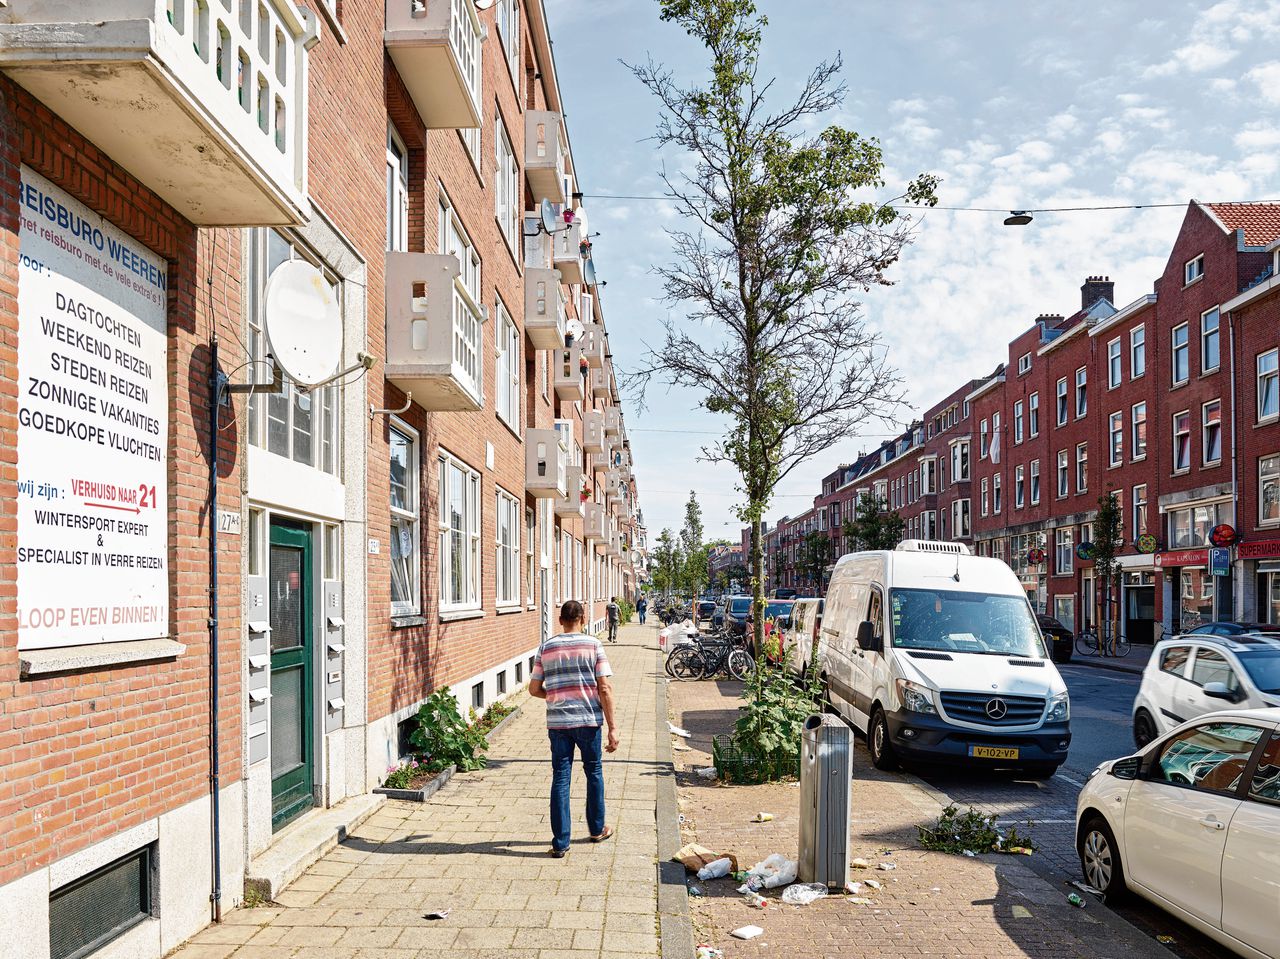 De Grote Visserijstraat in de Rotterdamse wijk Bospolder-Tussendijken. In de toekomstige herinrichting moet plek zijn voor het warmtenet én volle bomen.